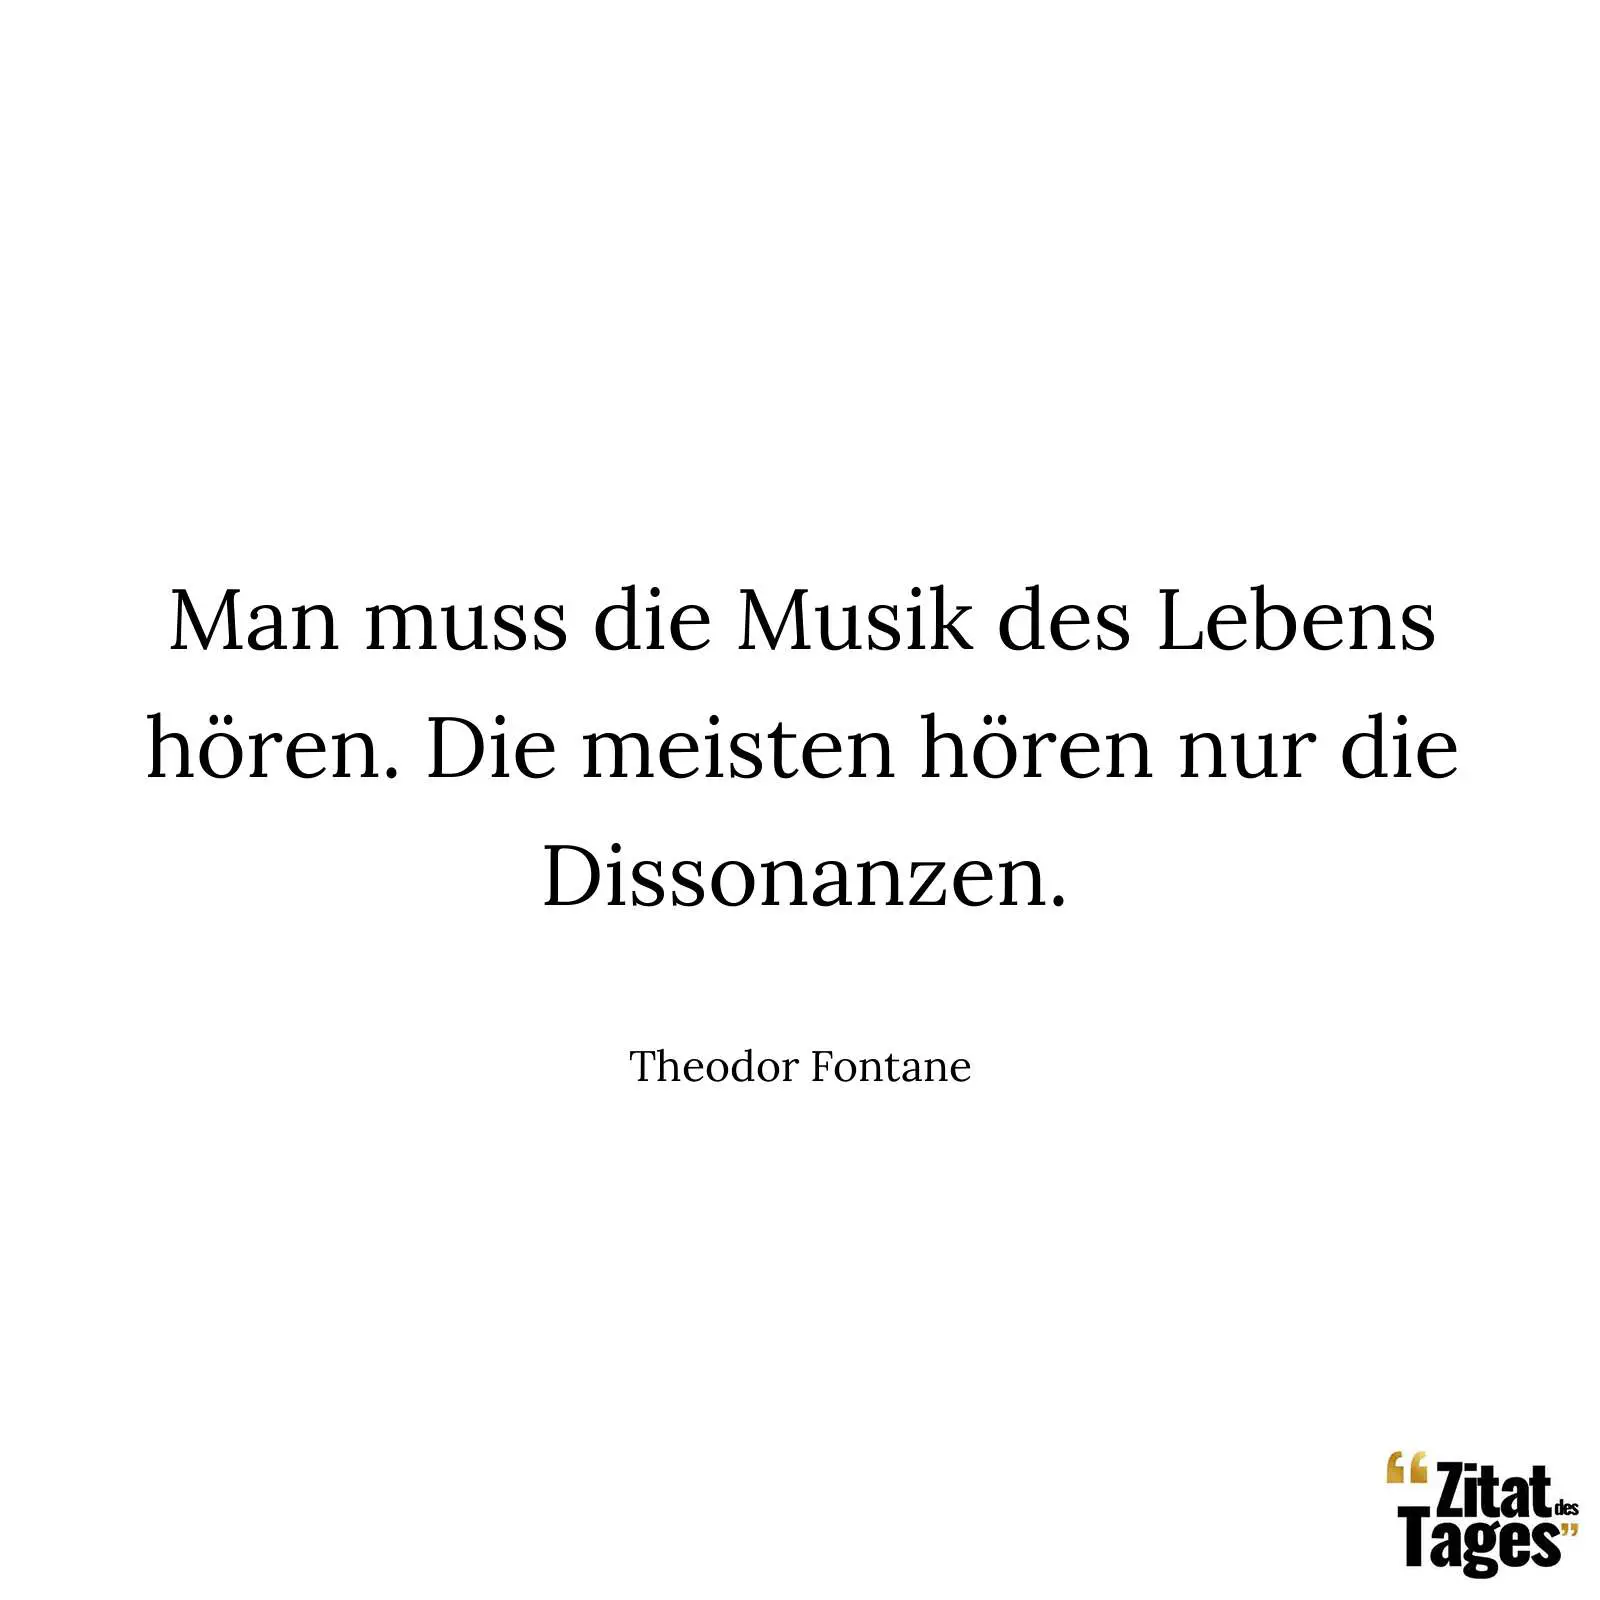 Man muss die Musik des Lebens hören. Die meisten hören nur die Dissonanzen. - Theodor Fontane